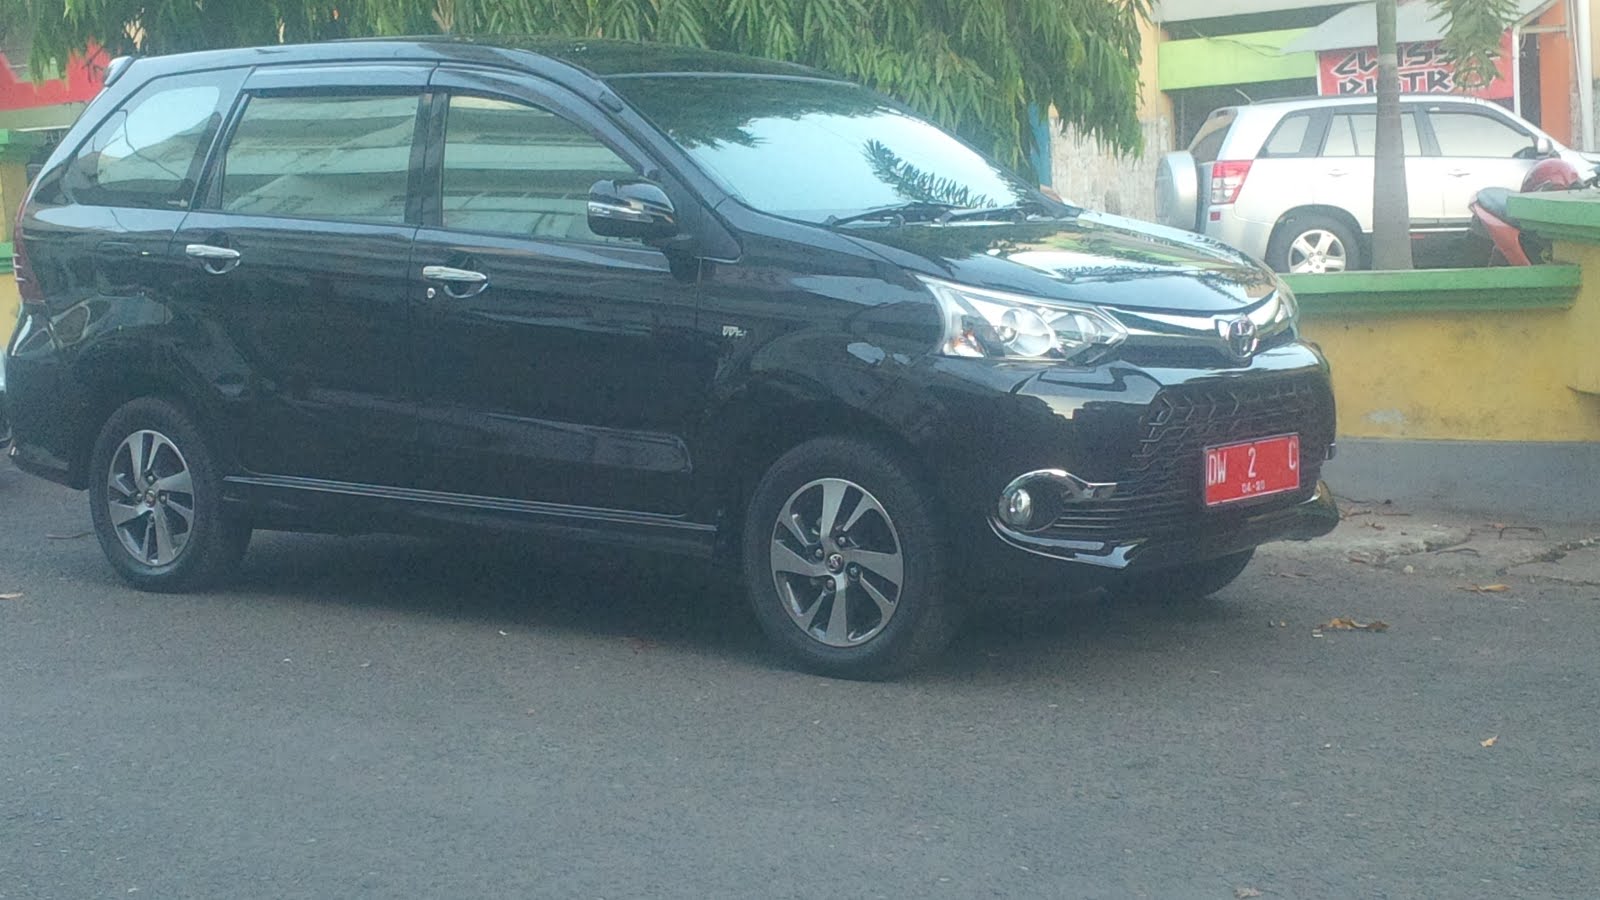 Randis Masih Rusak, Wakil Bupati Terpaksa Pakai Mobil Avansa